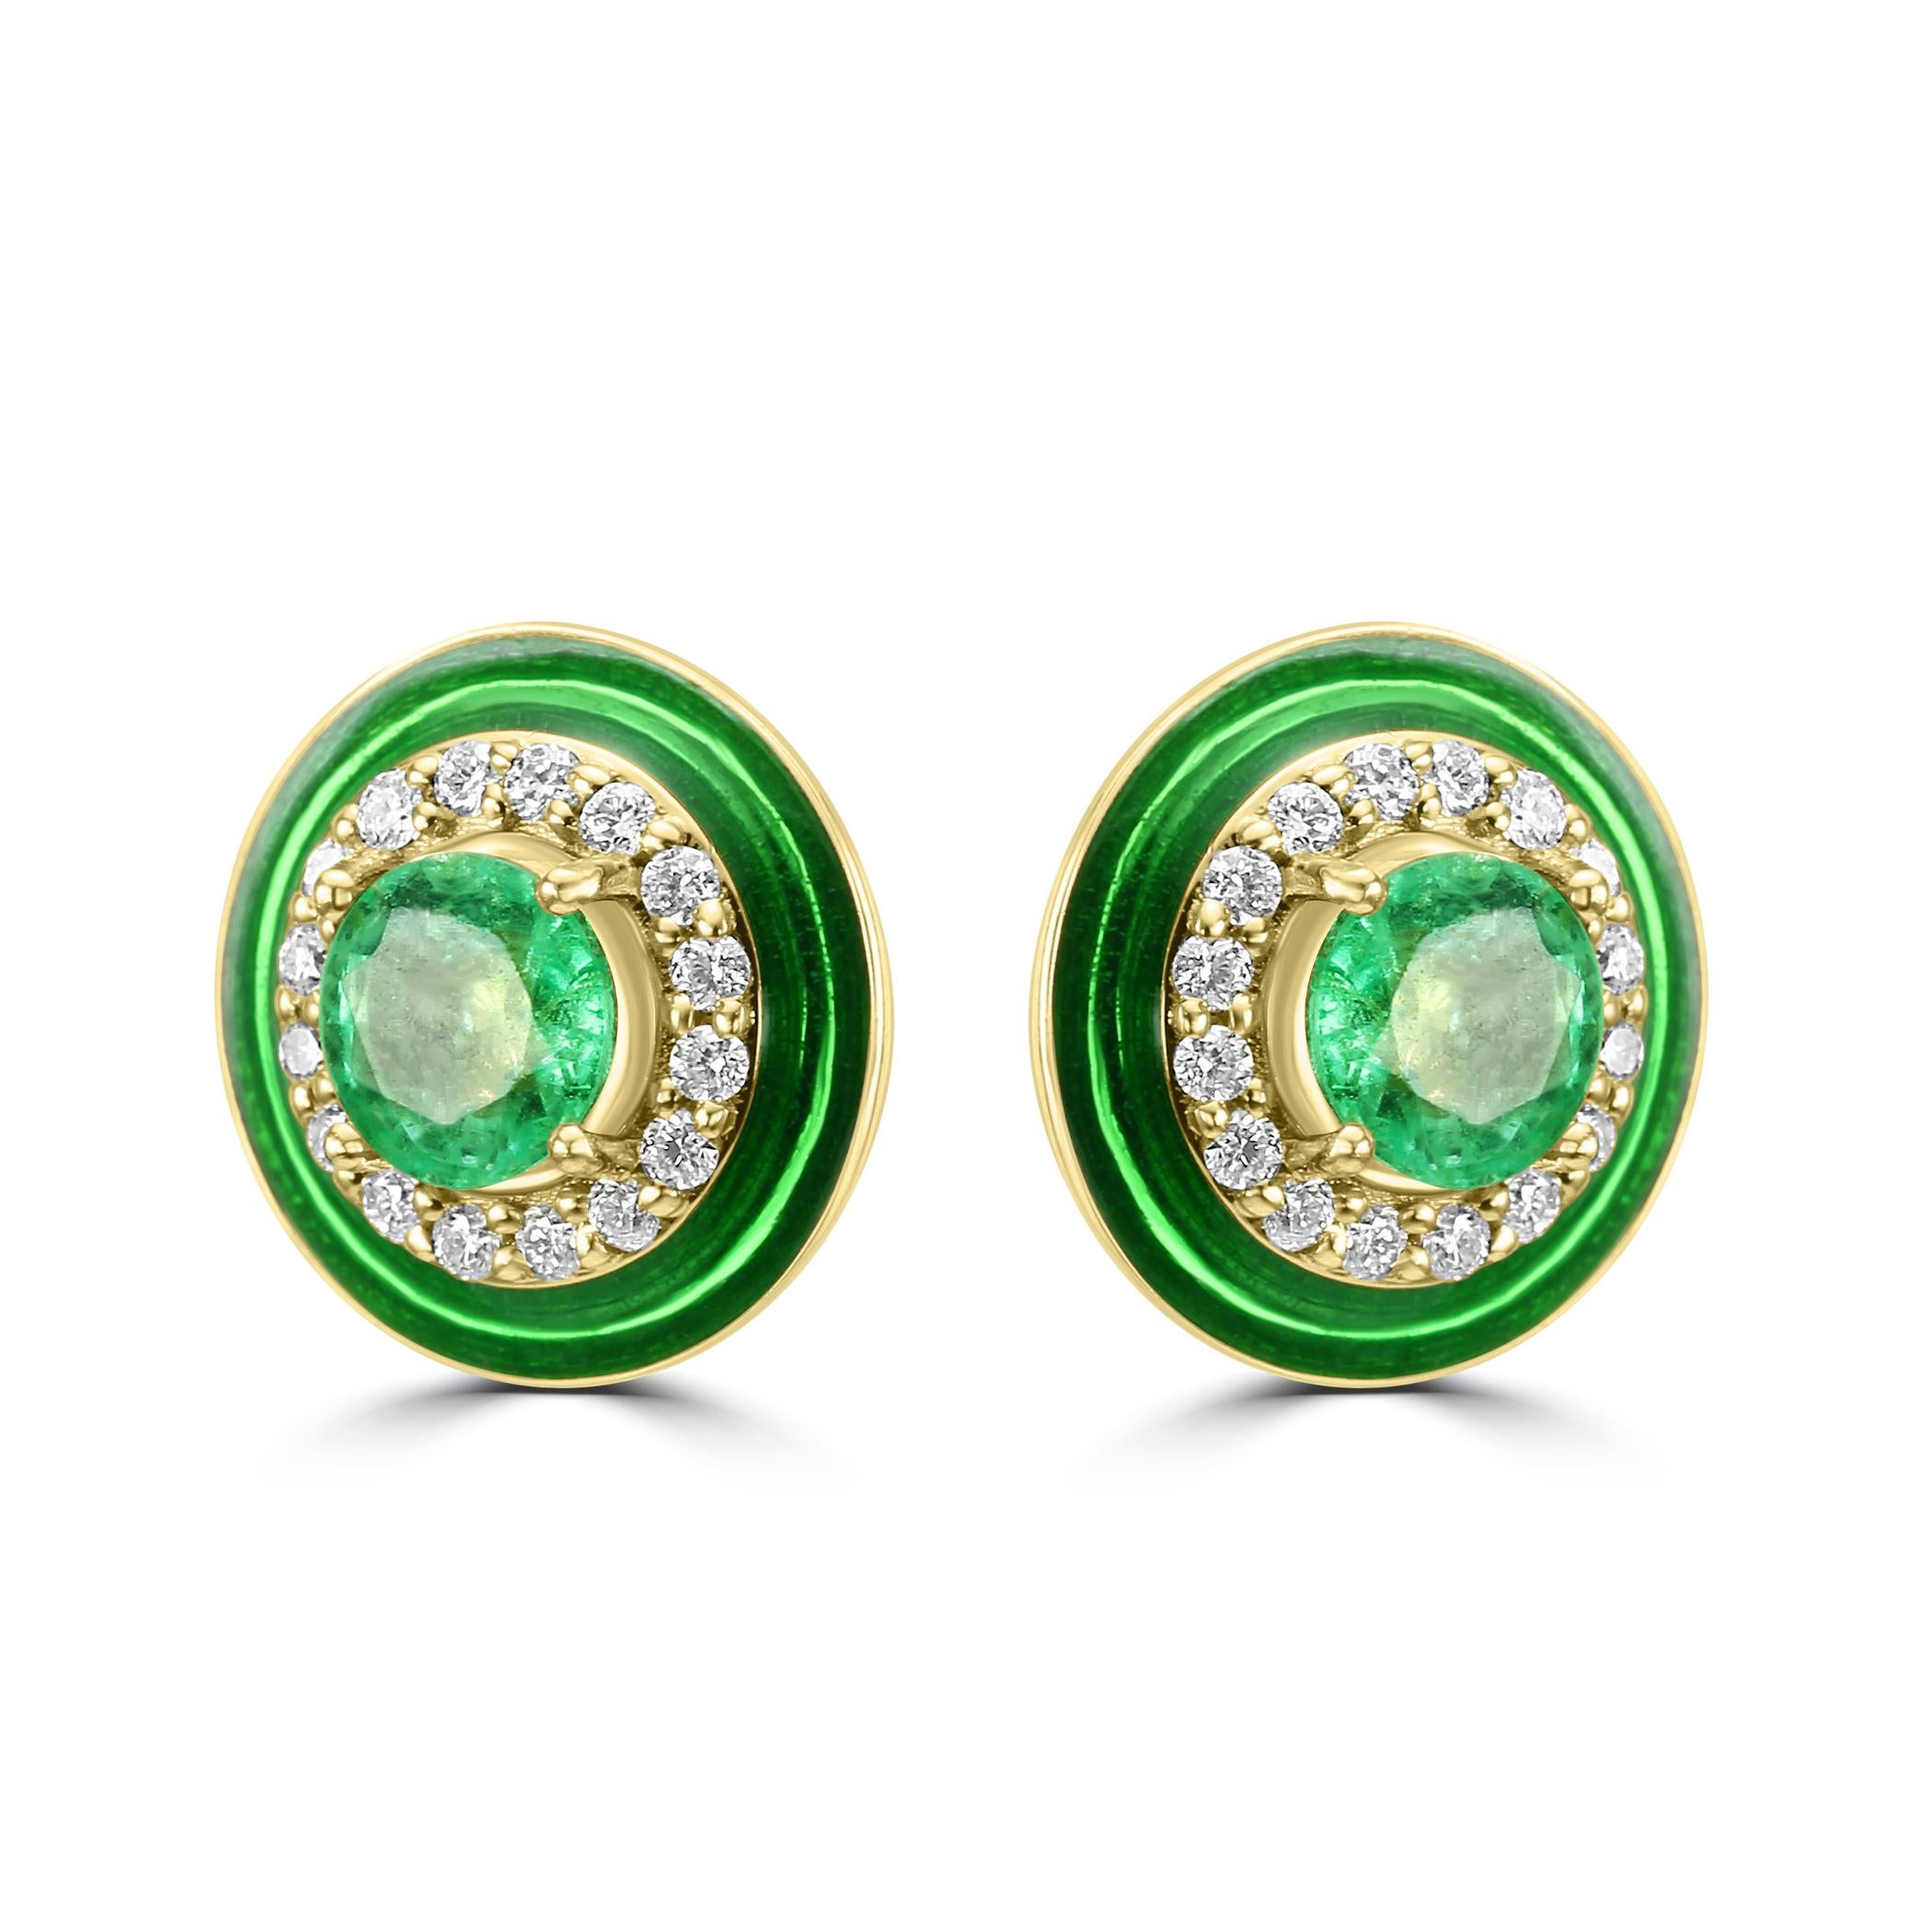 Der runde Smaragd in der Mitte dieser Ohrringe hat ein Gewicht von insgesamt 0,32 Karat. Der satte grüne Farbton des Smaragds verleiht dem Design einen Hauch von Luxus und Zeitlosigkeit und macht es zu einem herausragenden Stück in Ihrer